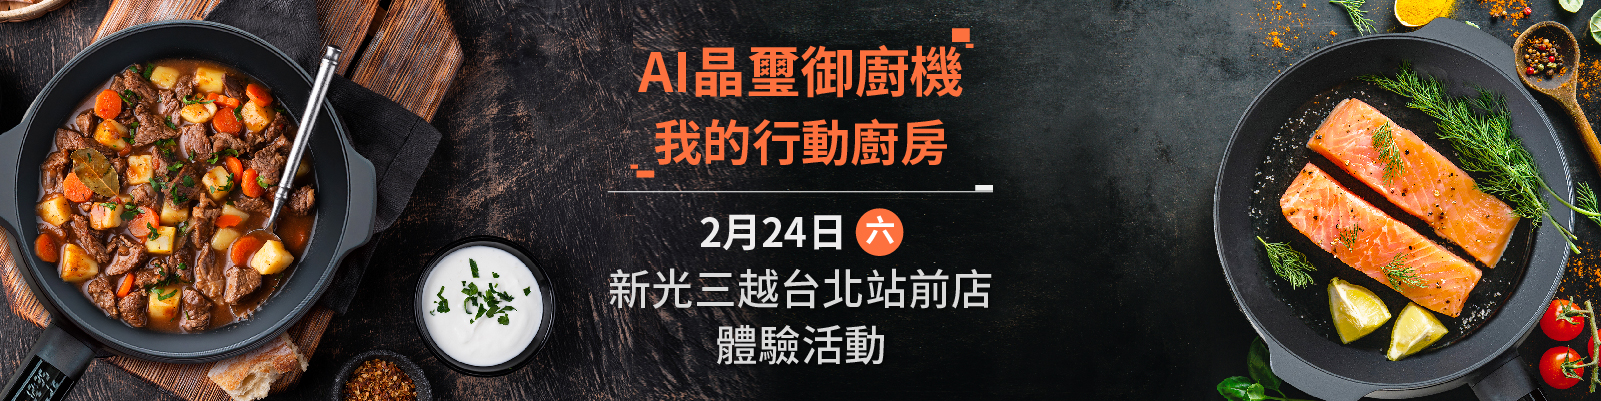 240320御廚機 官網活動頁設計 新光三越台北站前店